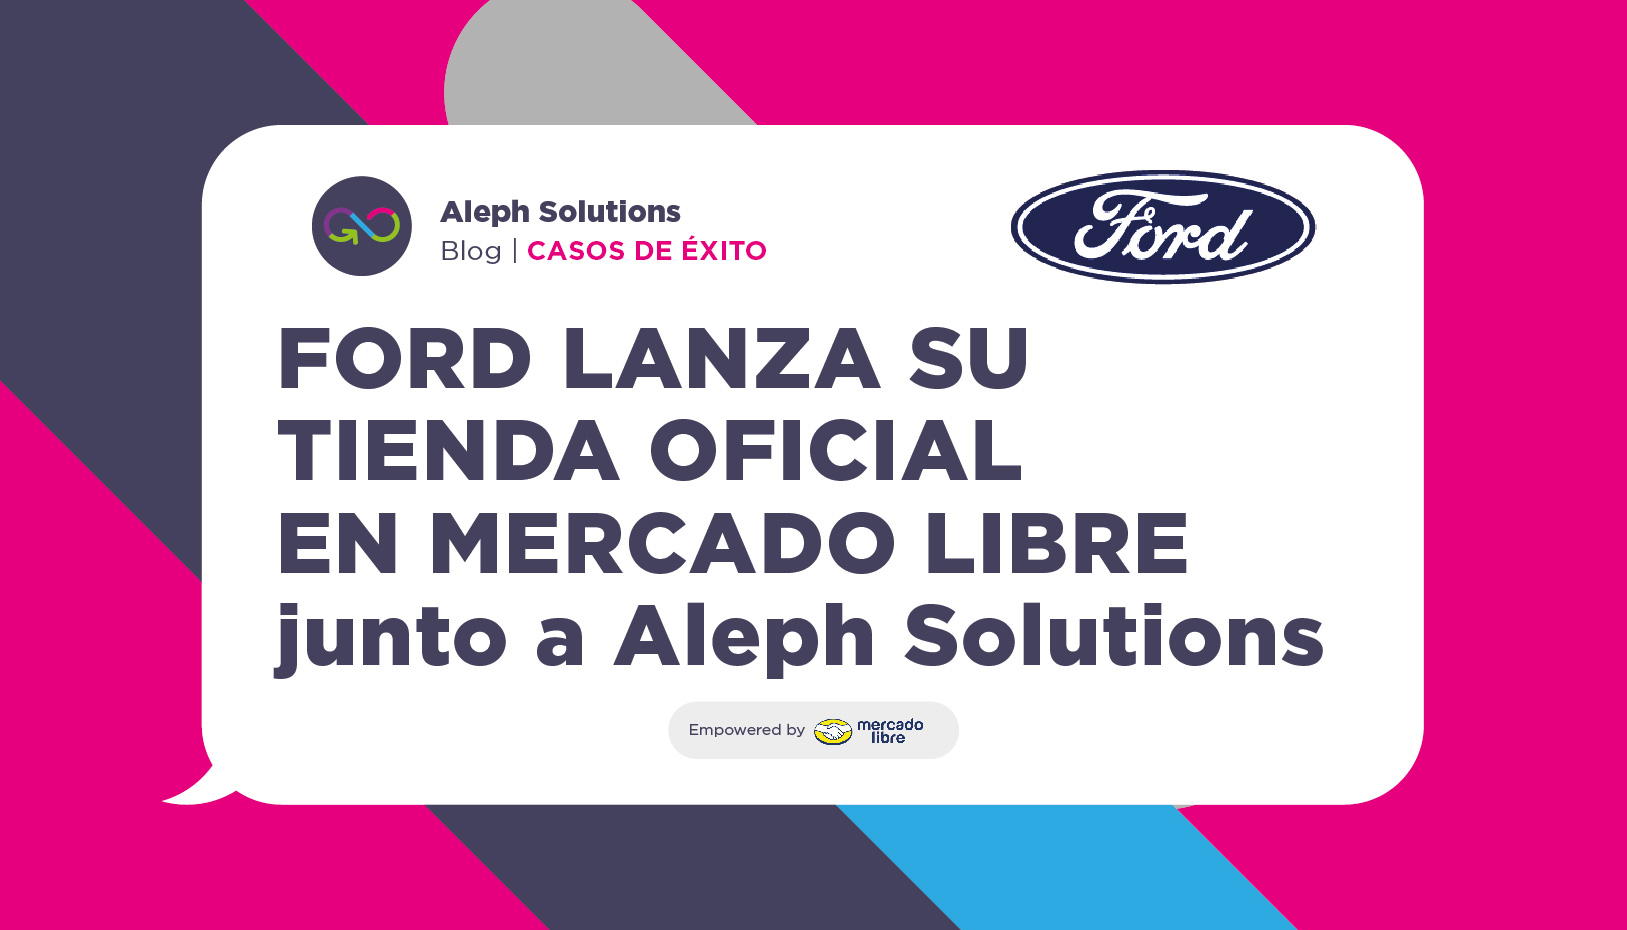 Ford lanza su tienda oficial en Mercado Libre con Aleph Solutions como plataforma